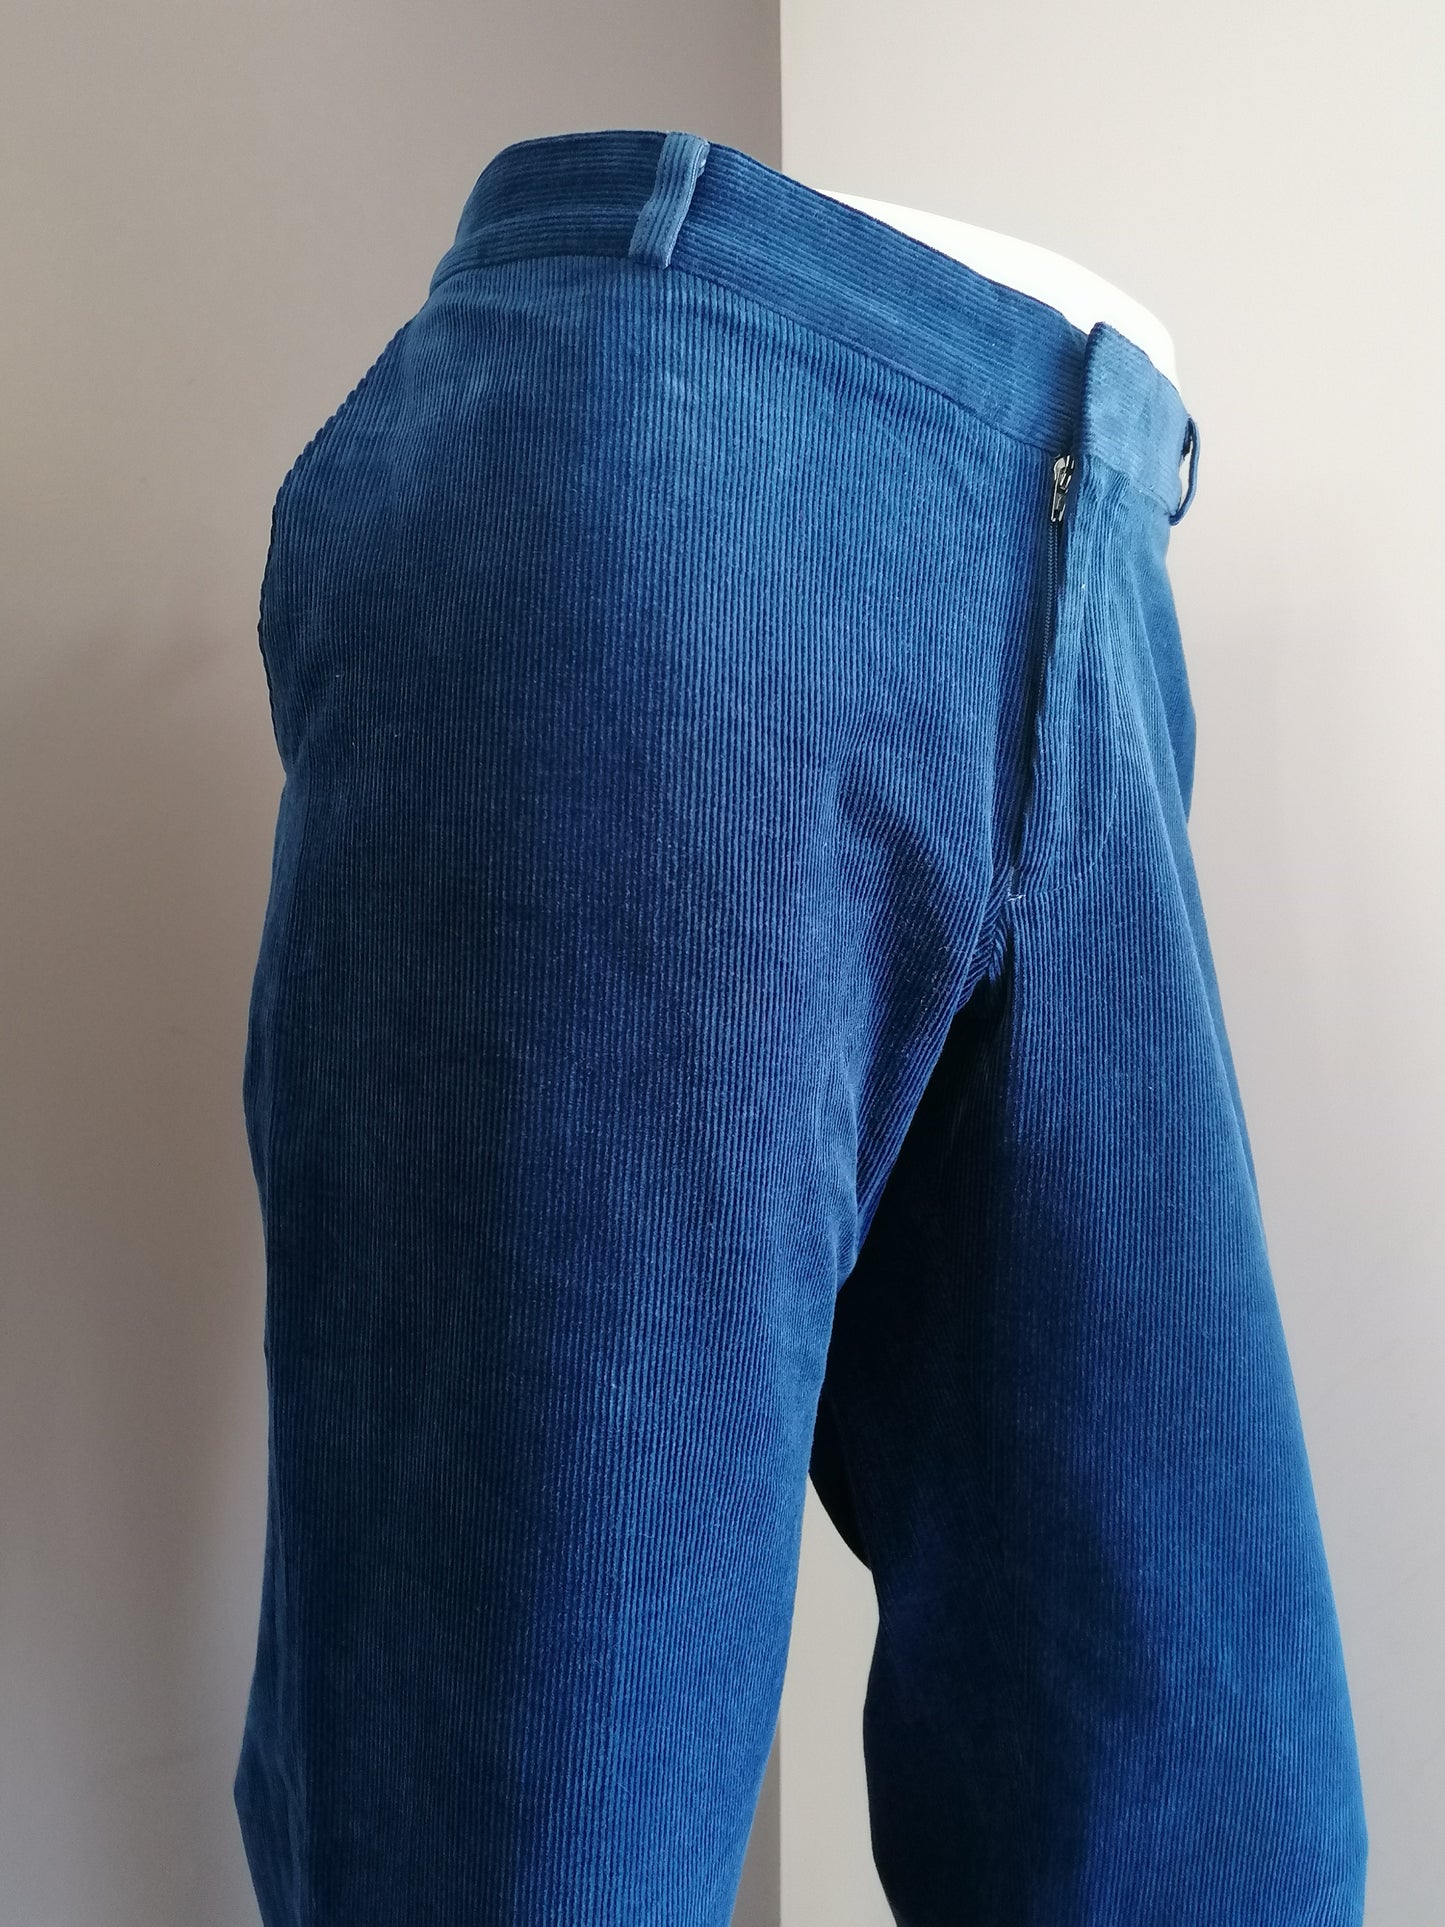 Pantalons / pantalons de côtes étirés du confort. Couleur bleue. Taille 27 (54 / L)